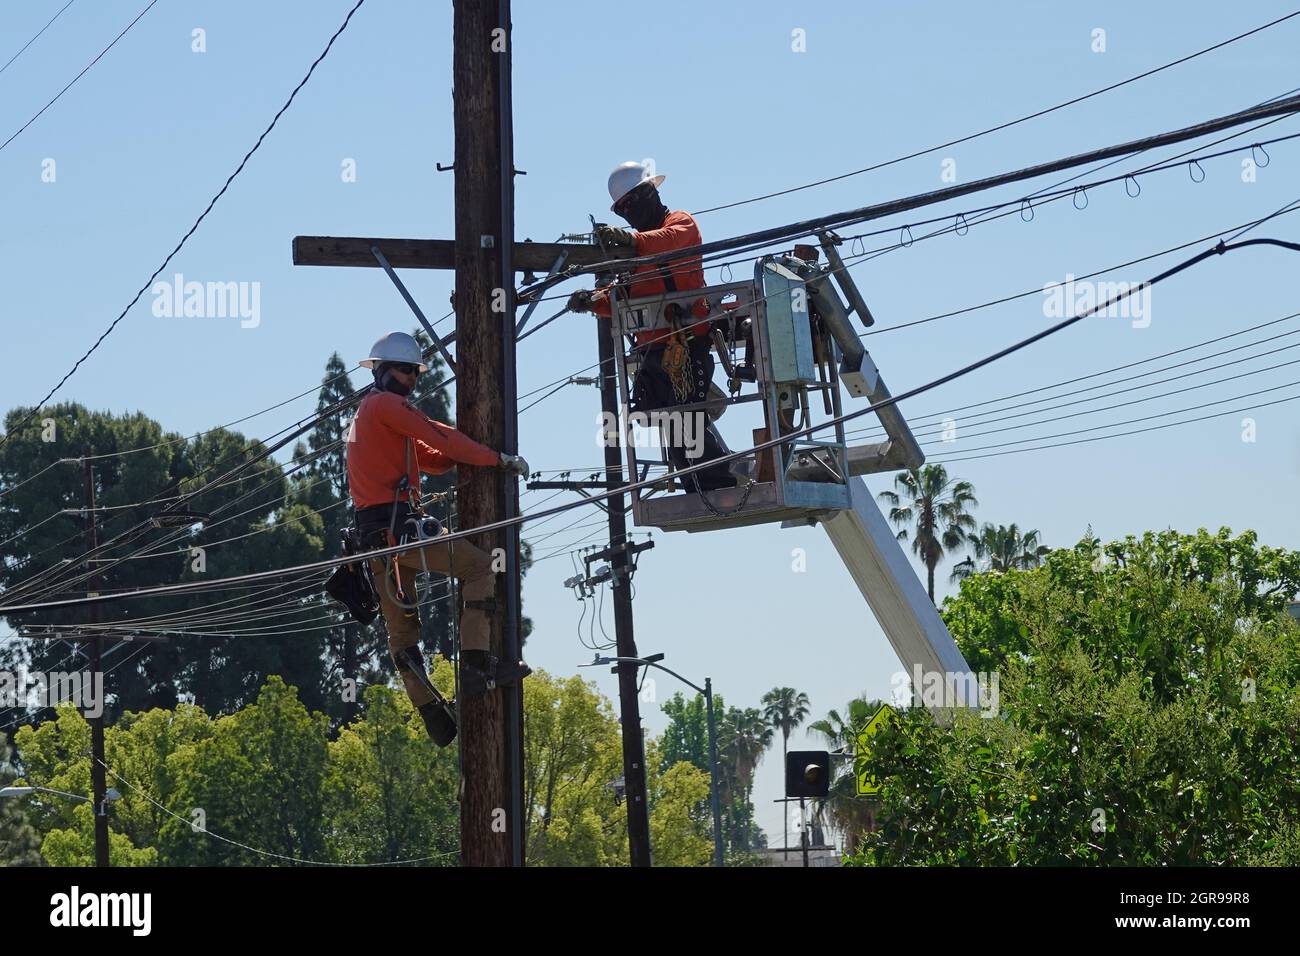 Los Angeles, CA / USA - 29 aprile 2021: I linesmen elettrici sono mostrati aggiornando i cavi di telecomunicazione lungo le linee telefoniche durante il giorno. Foto Stock